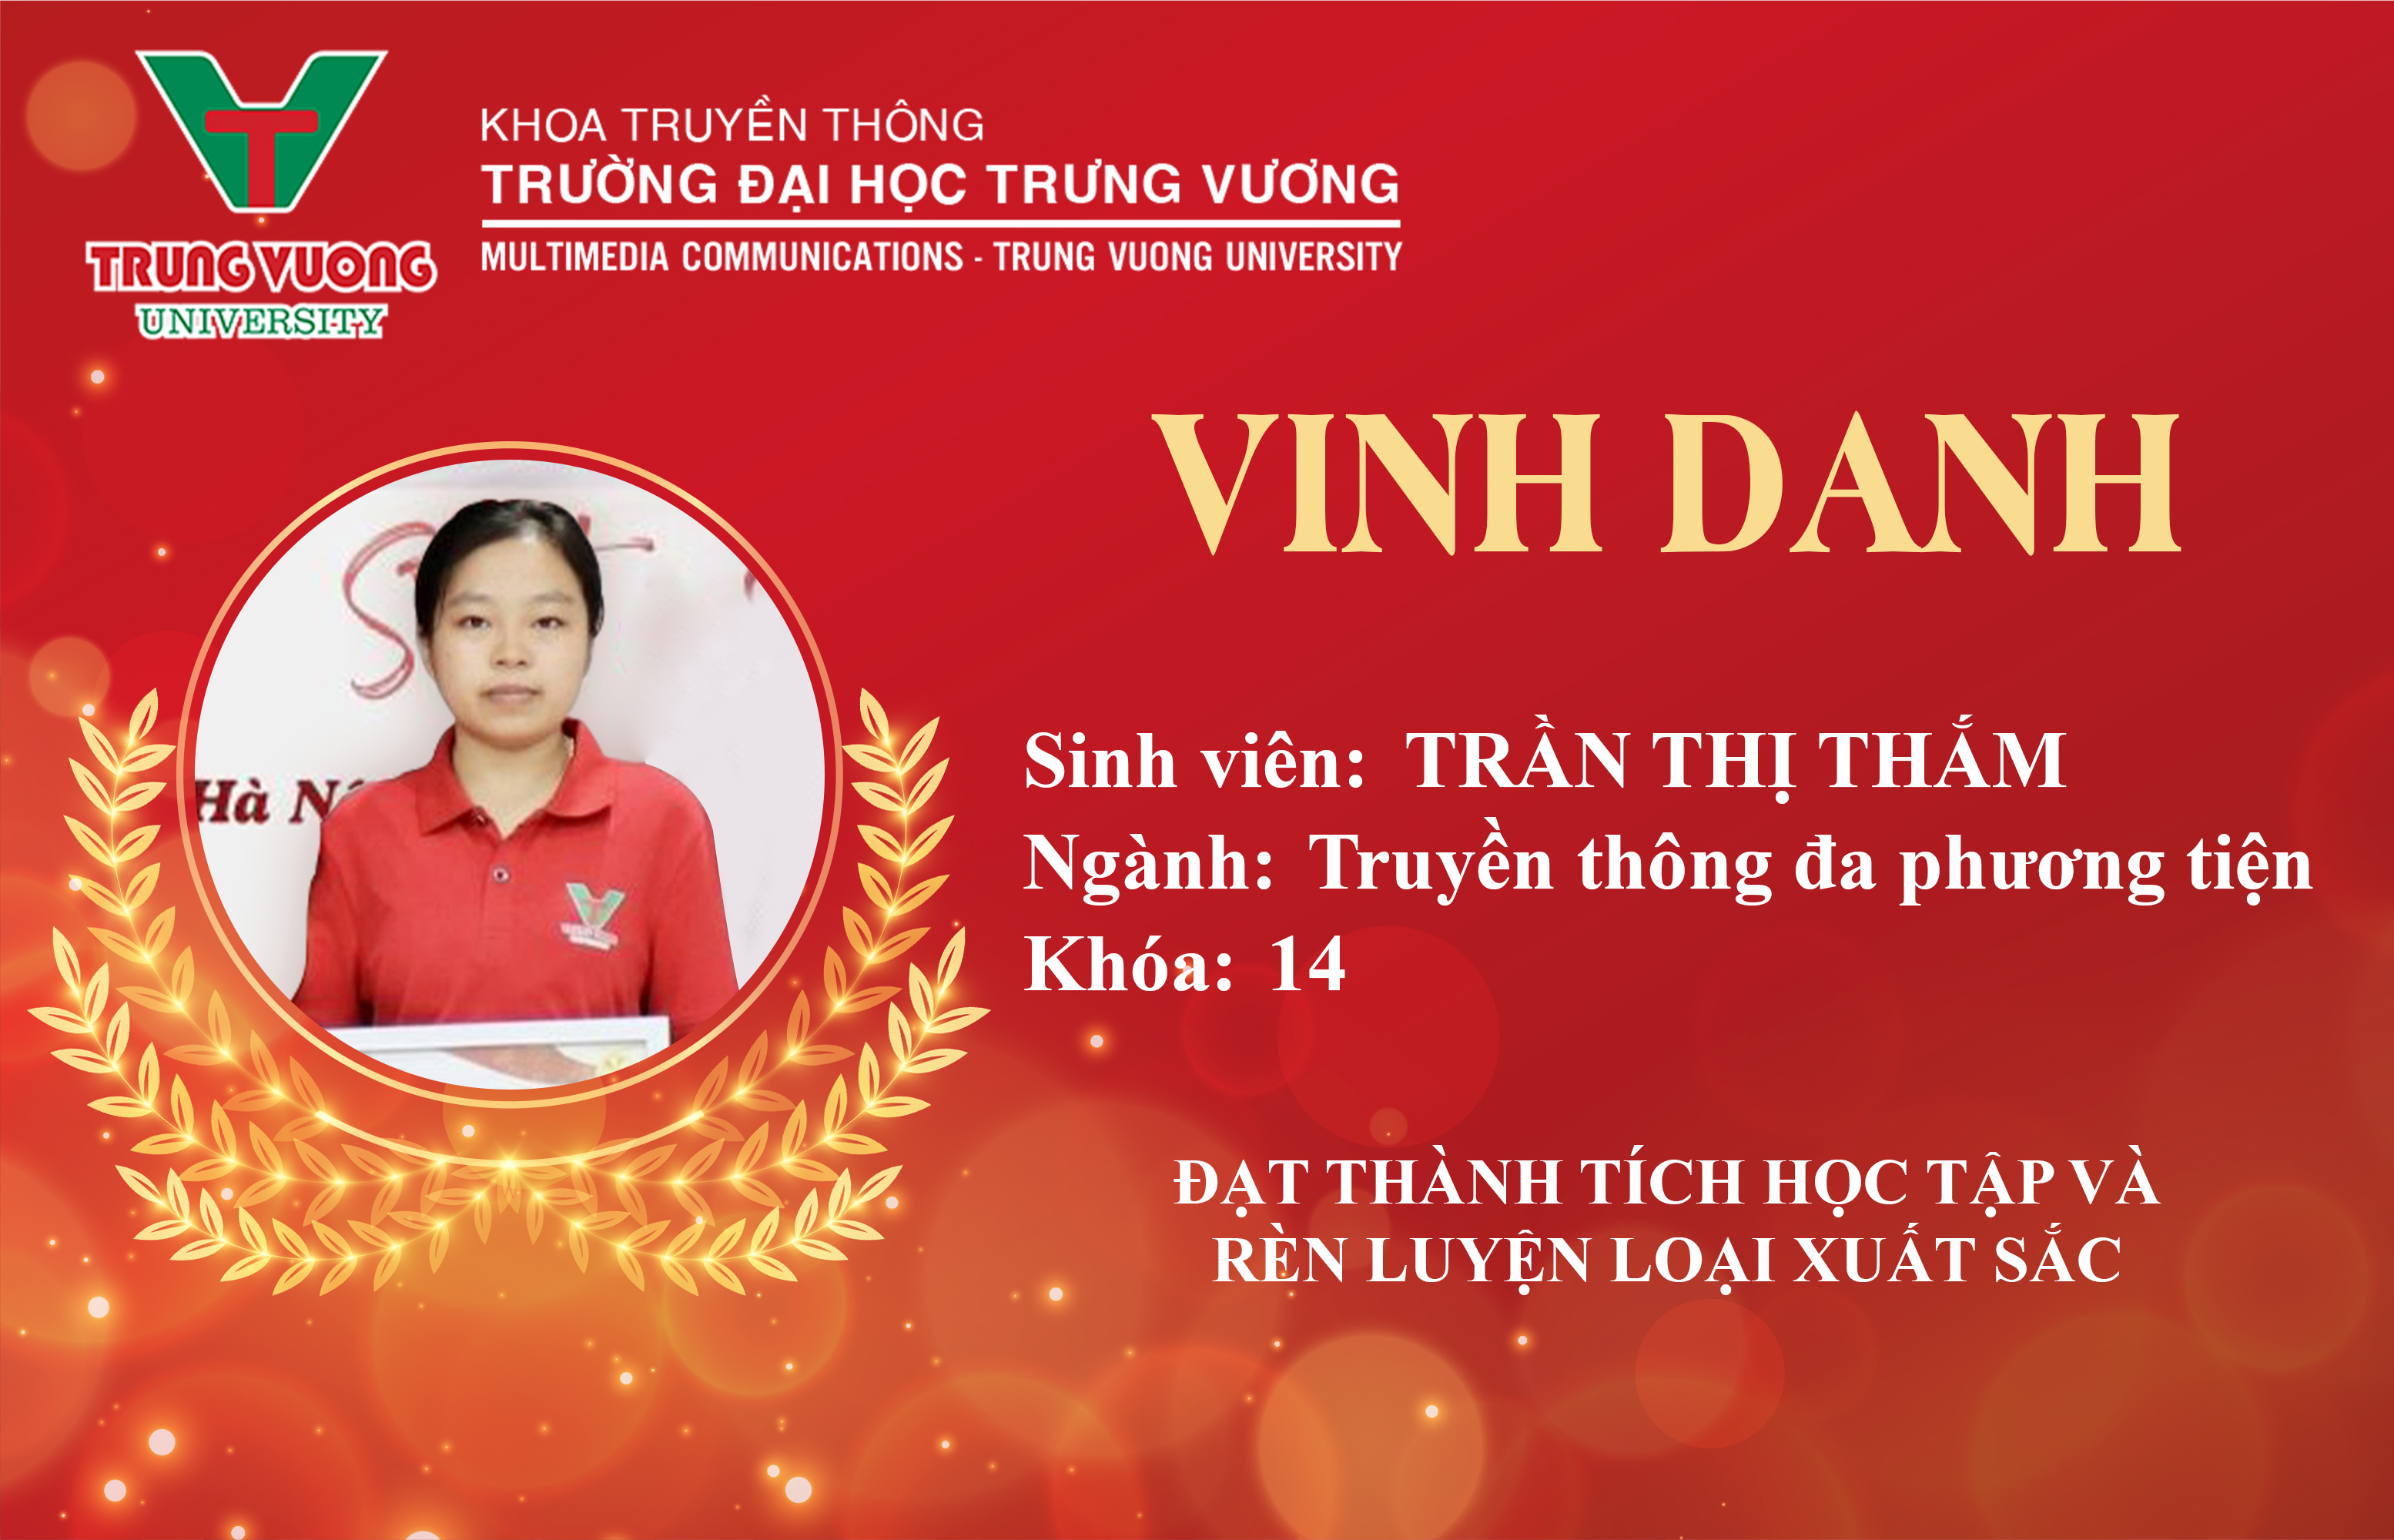 Vinh danh sinh viên Trần Thị Thắm - Ngành Truyền thông đa phương tiện K14  và được Khoa trao tặng học bổng 